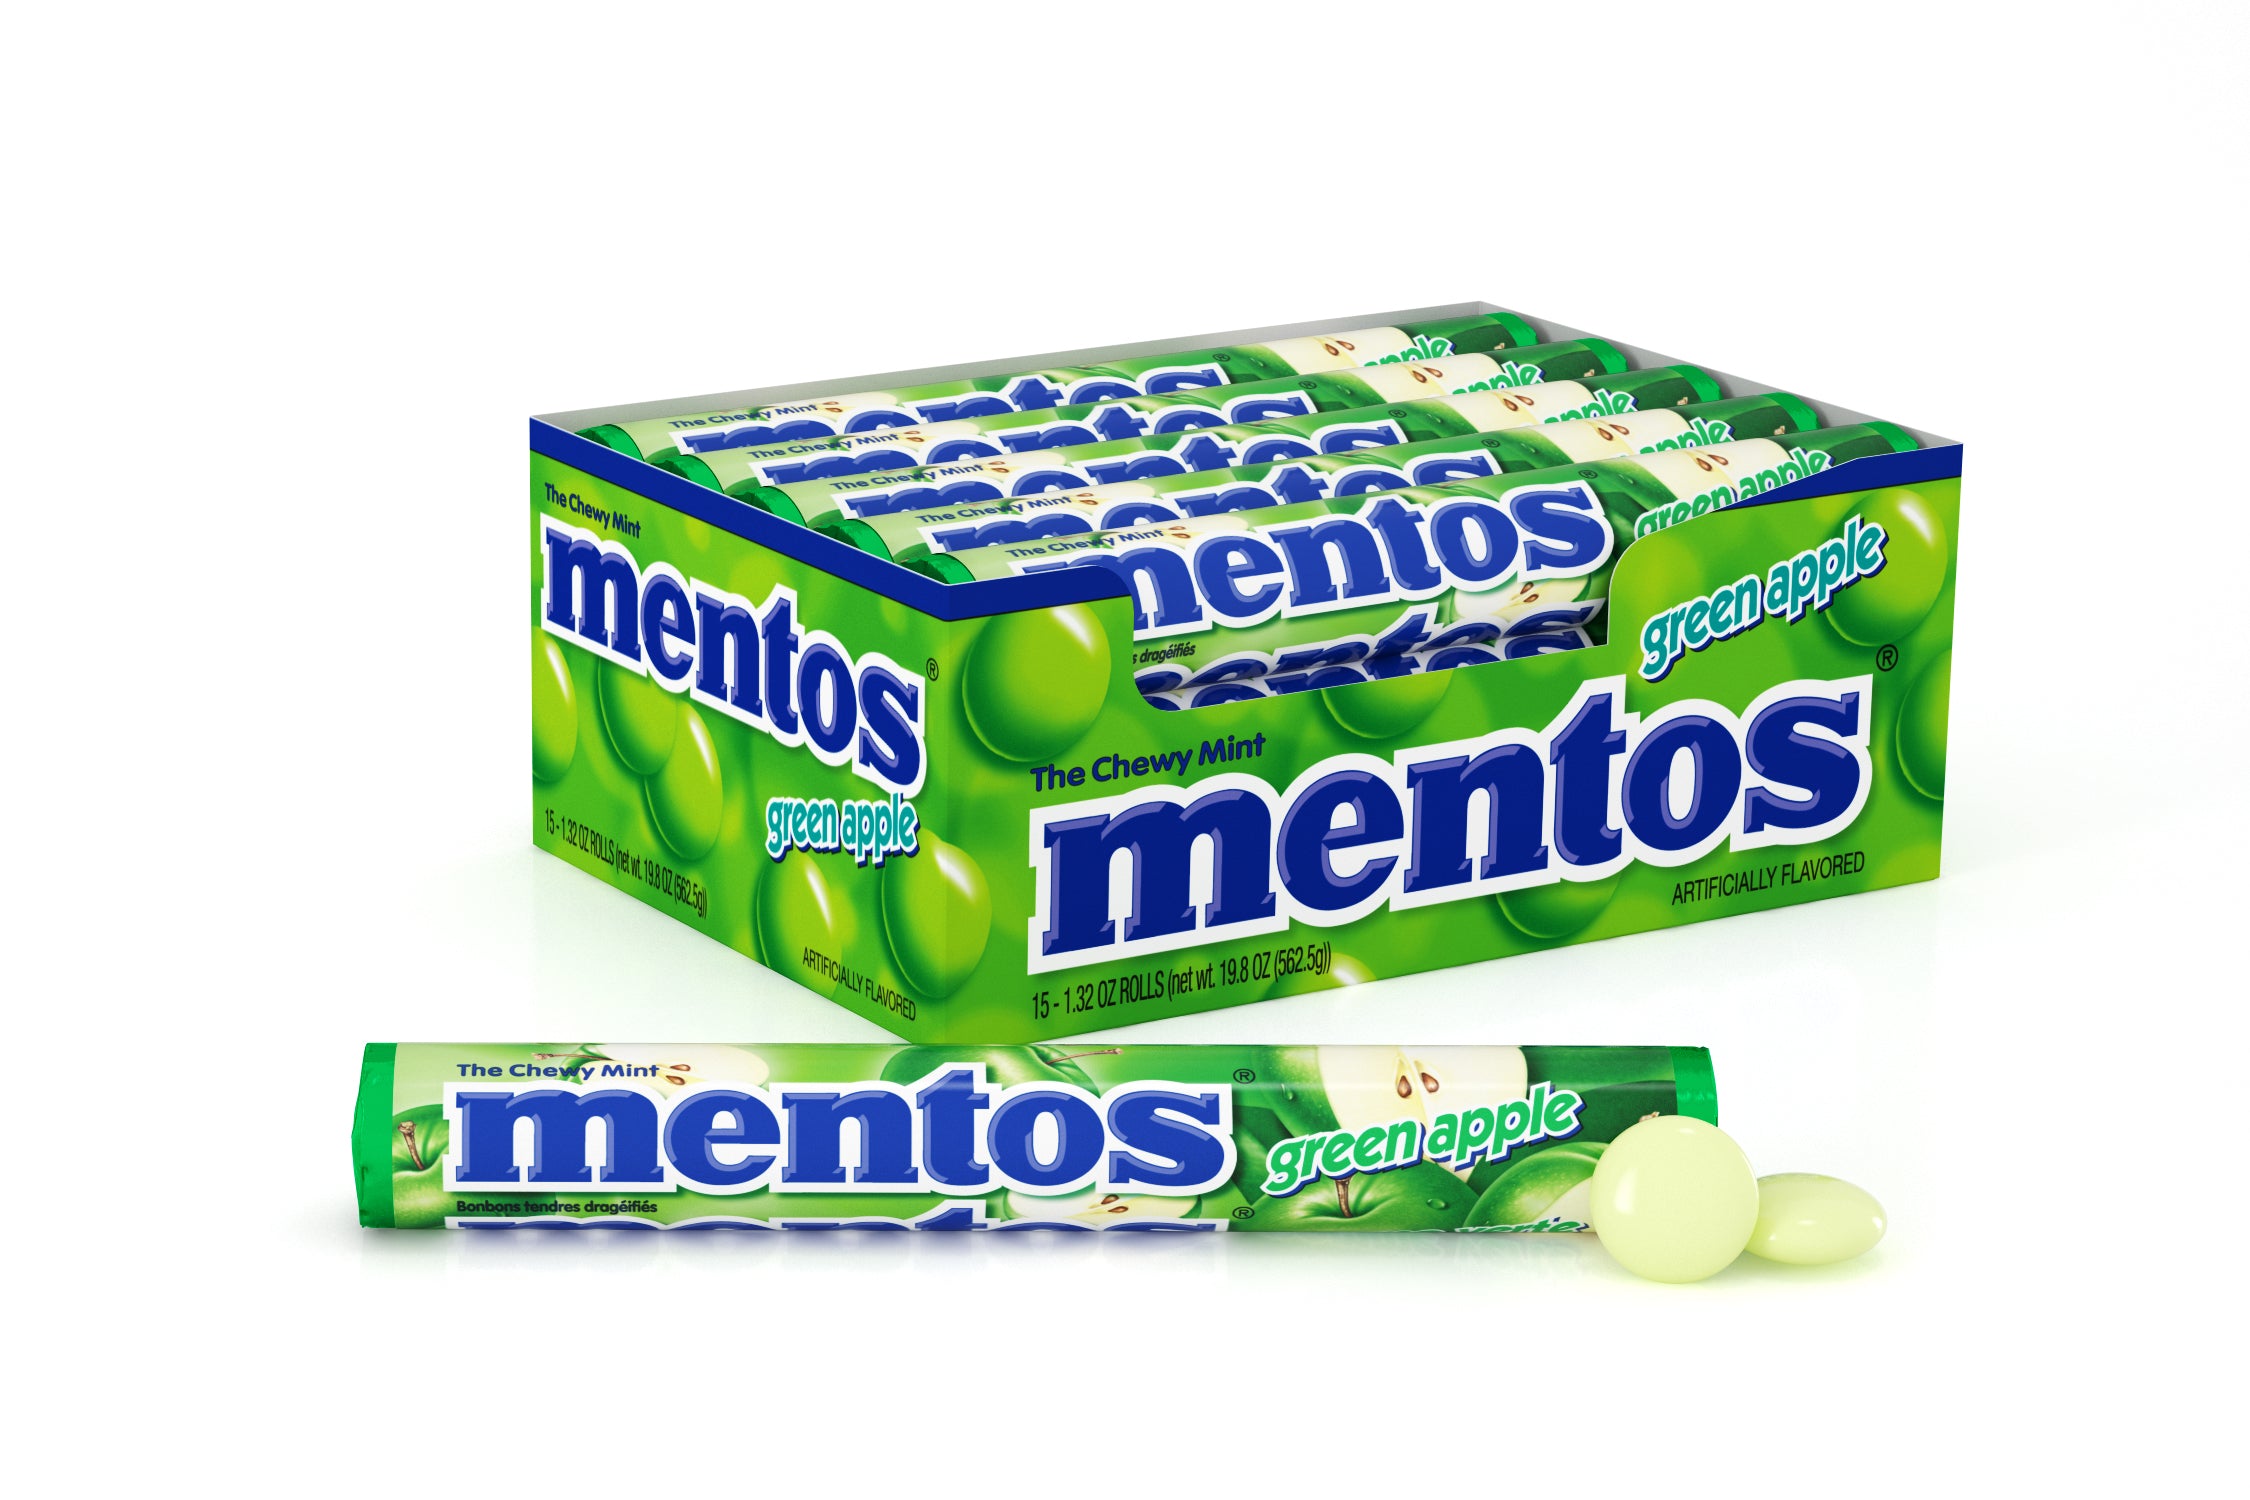 MENTOS - GREEN APPLE